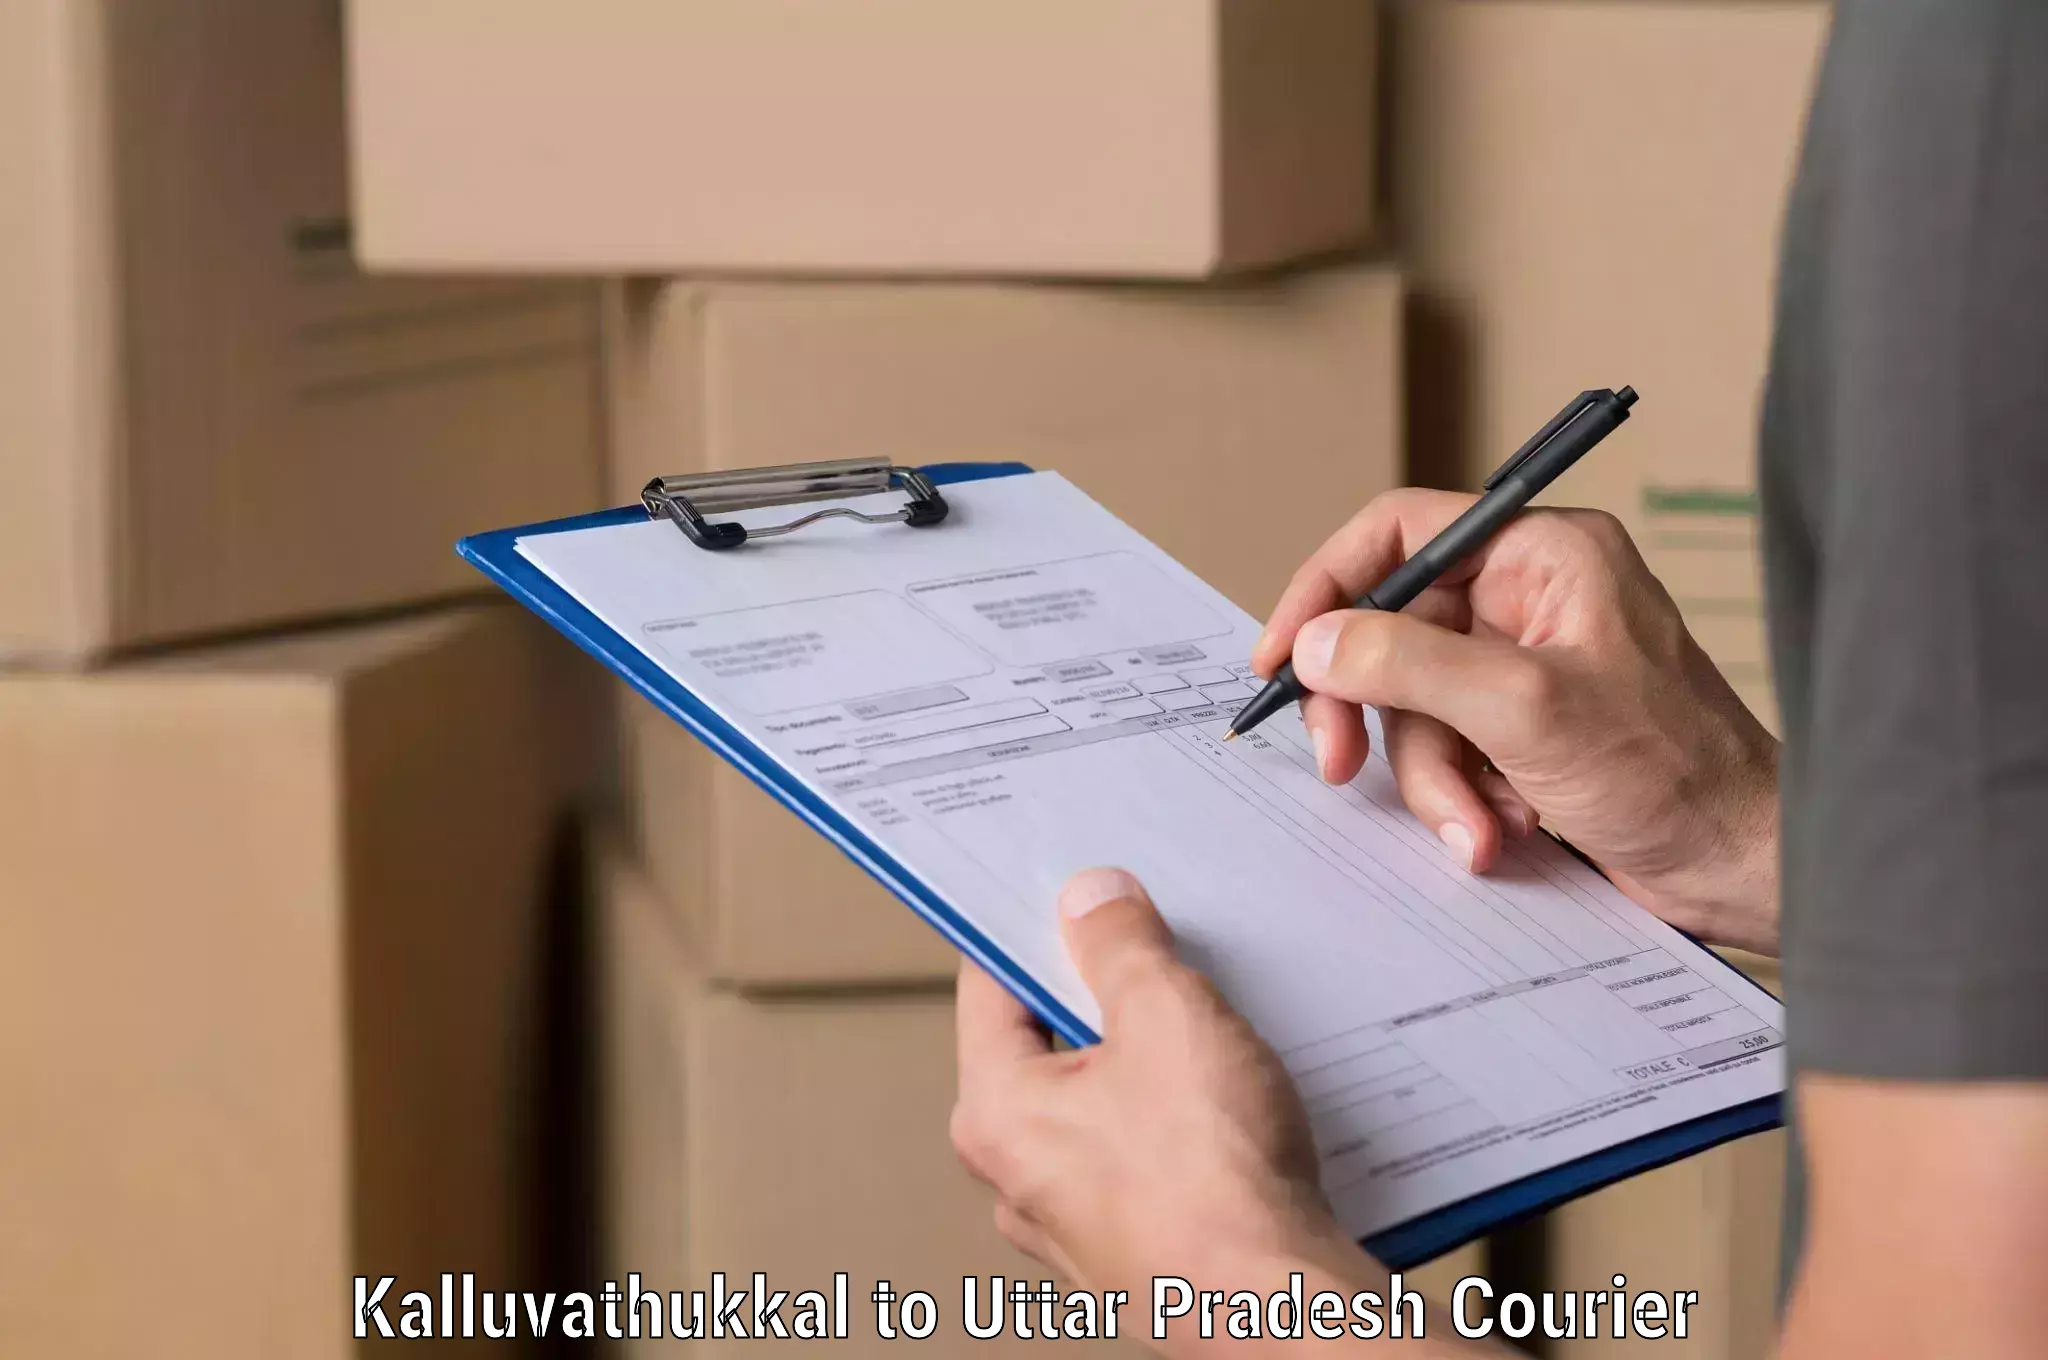 Multi-service courier options Kalluvathukkal to Uttar Pradesh